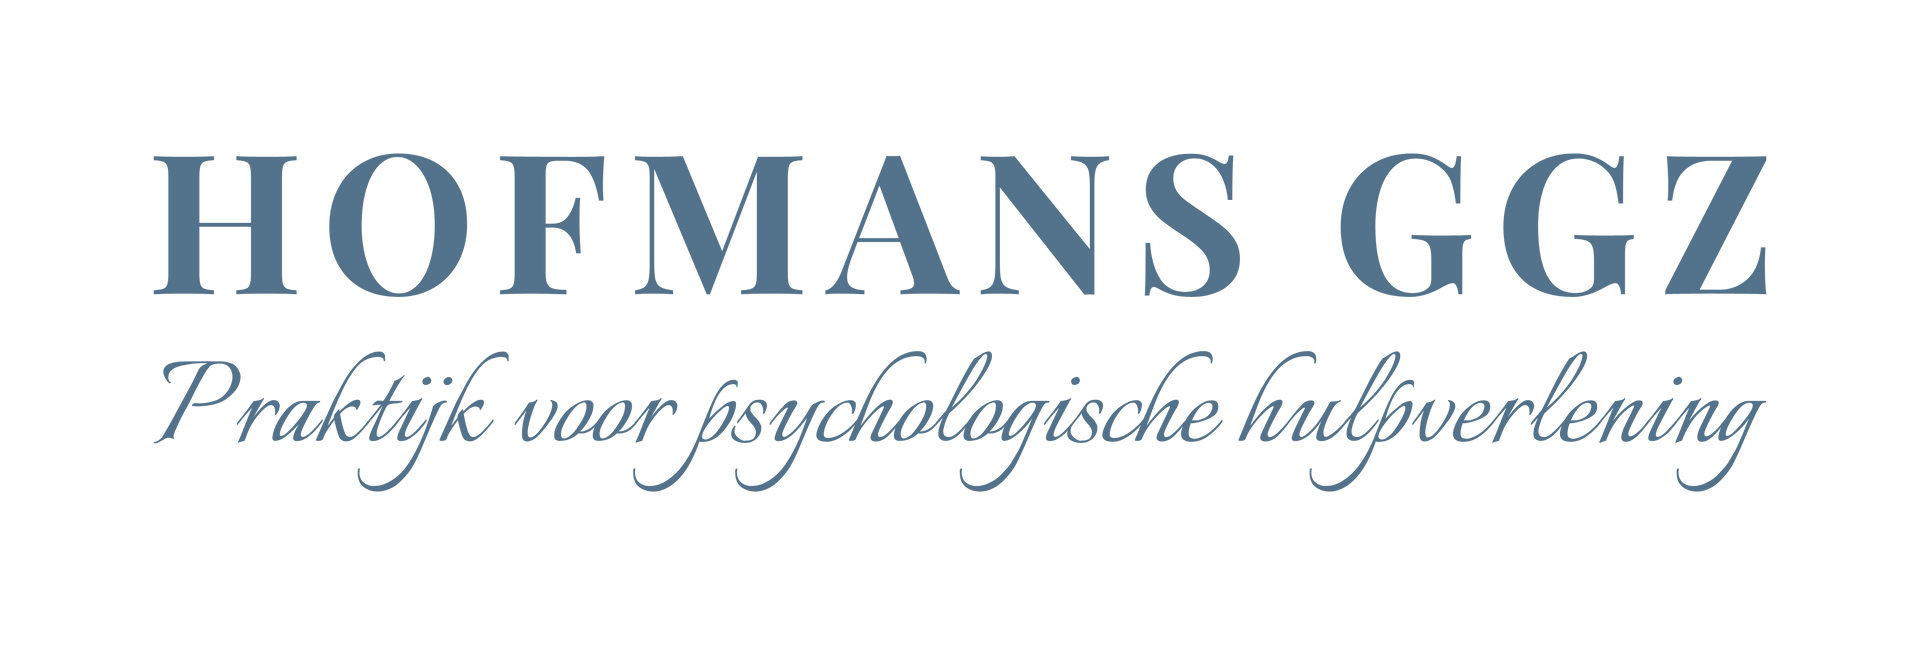 HOFMANS GGZ - praktijk voor psychologische hulpverlening -